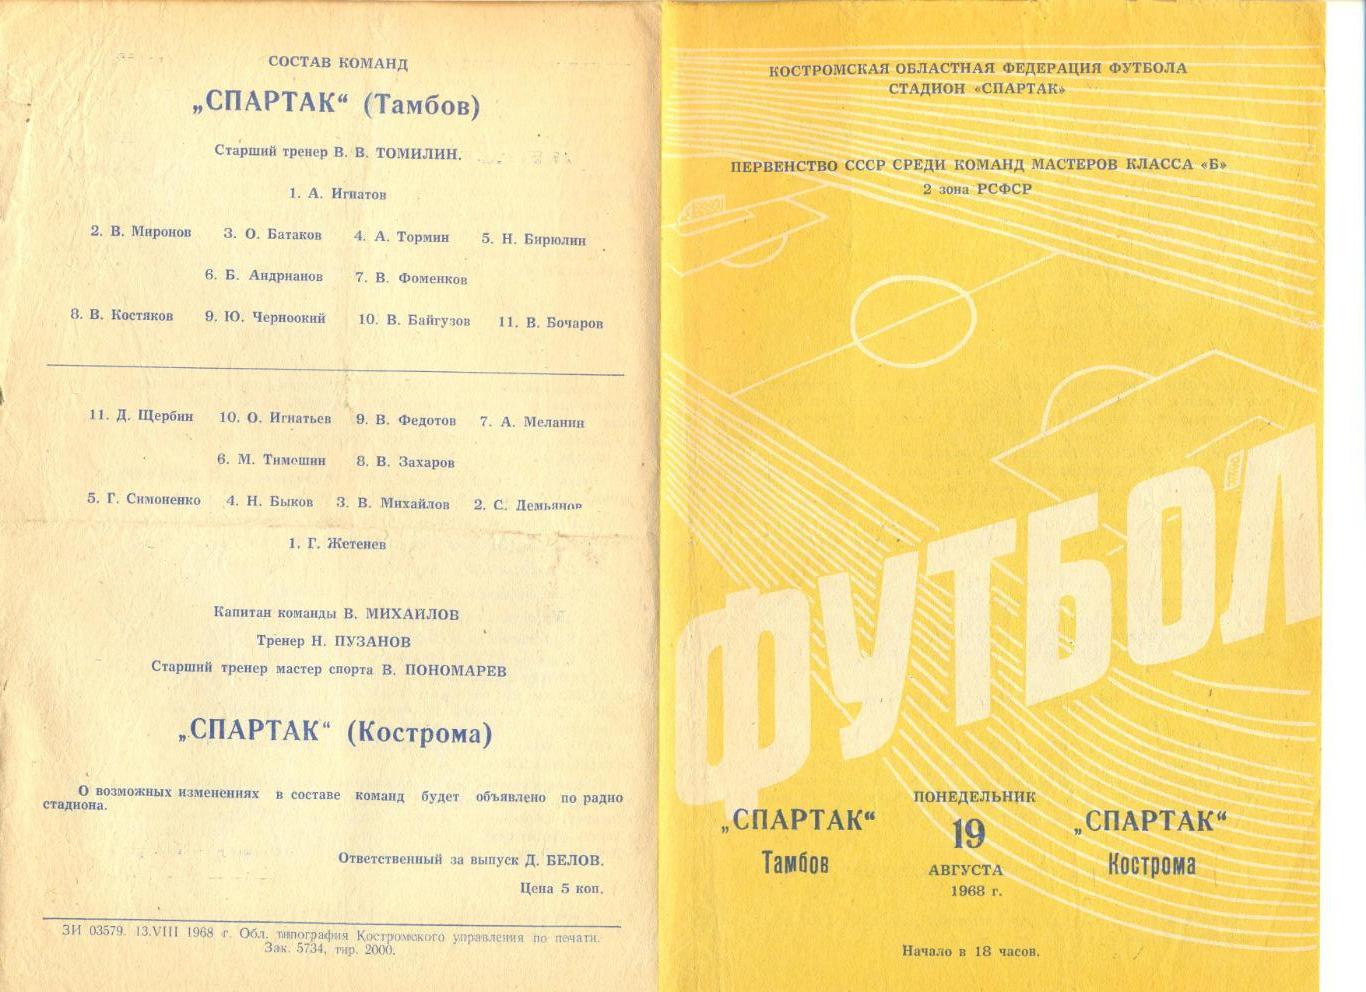 Спартак Кострома - Спартак Тамбов 10.08.1968 г.